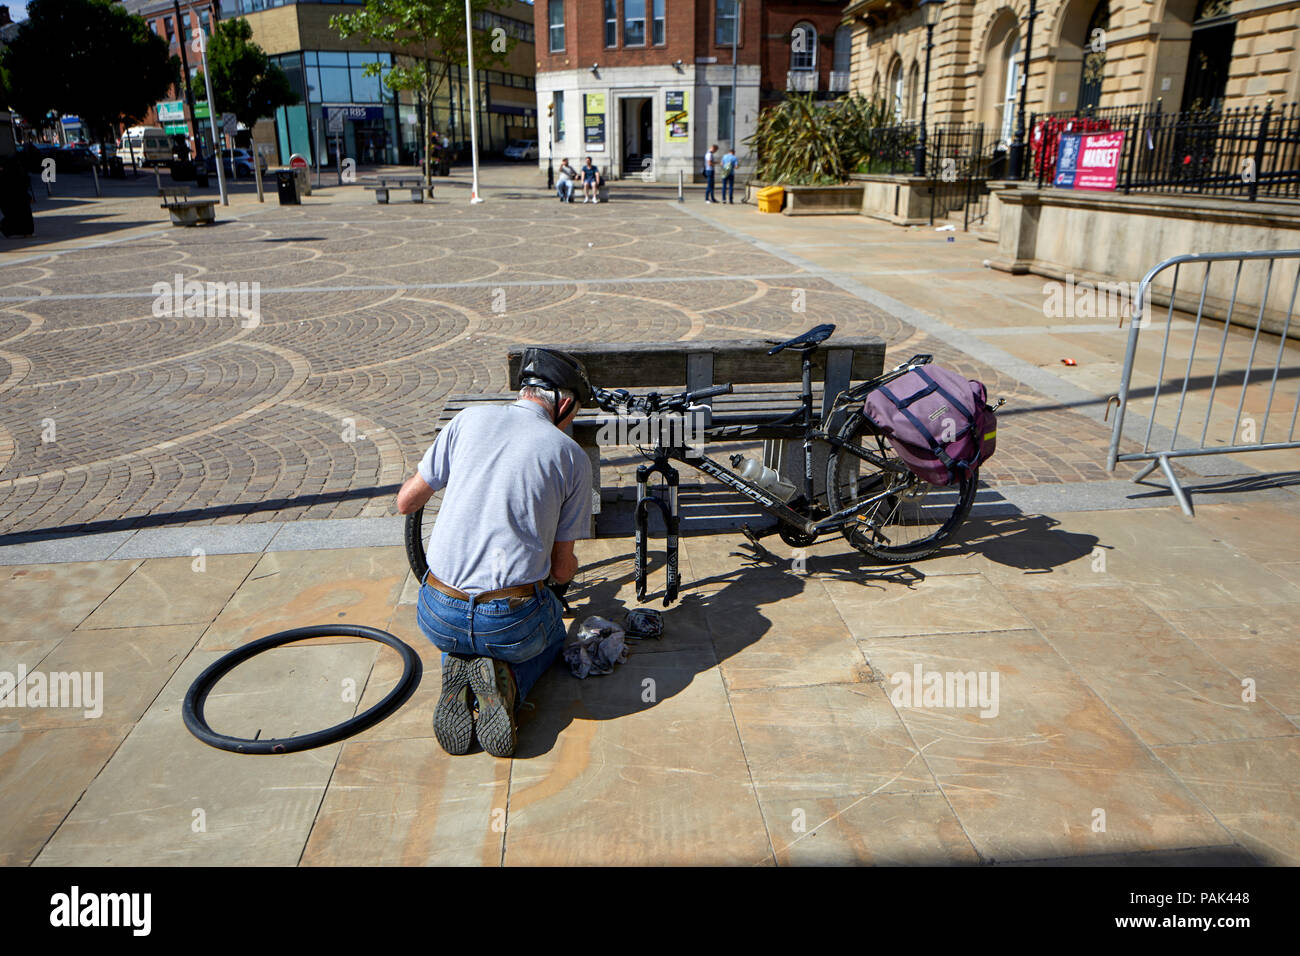 Blackbun Stadtzentrum in Lancashire, England, das Rathaus Radfahrer zur Festsetzung eines platten Reifens auf seinem Fahrrad Stockfoto